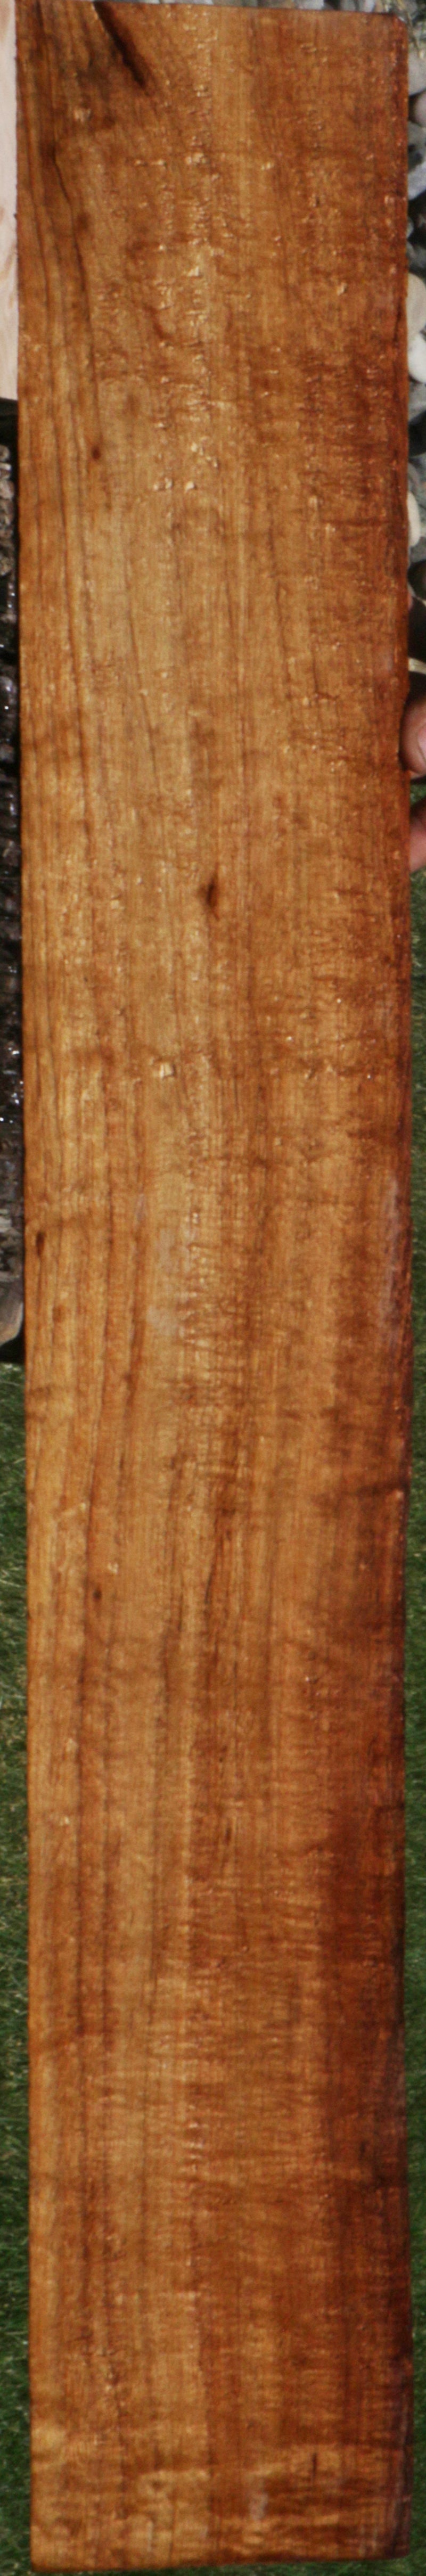 Extra Fancy Hawaiian Koa Instrument Lumber